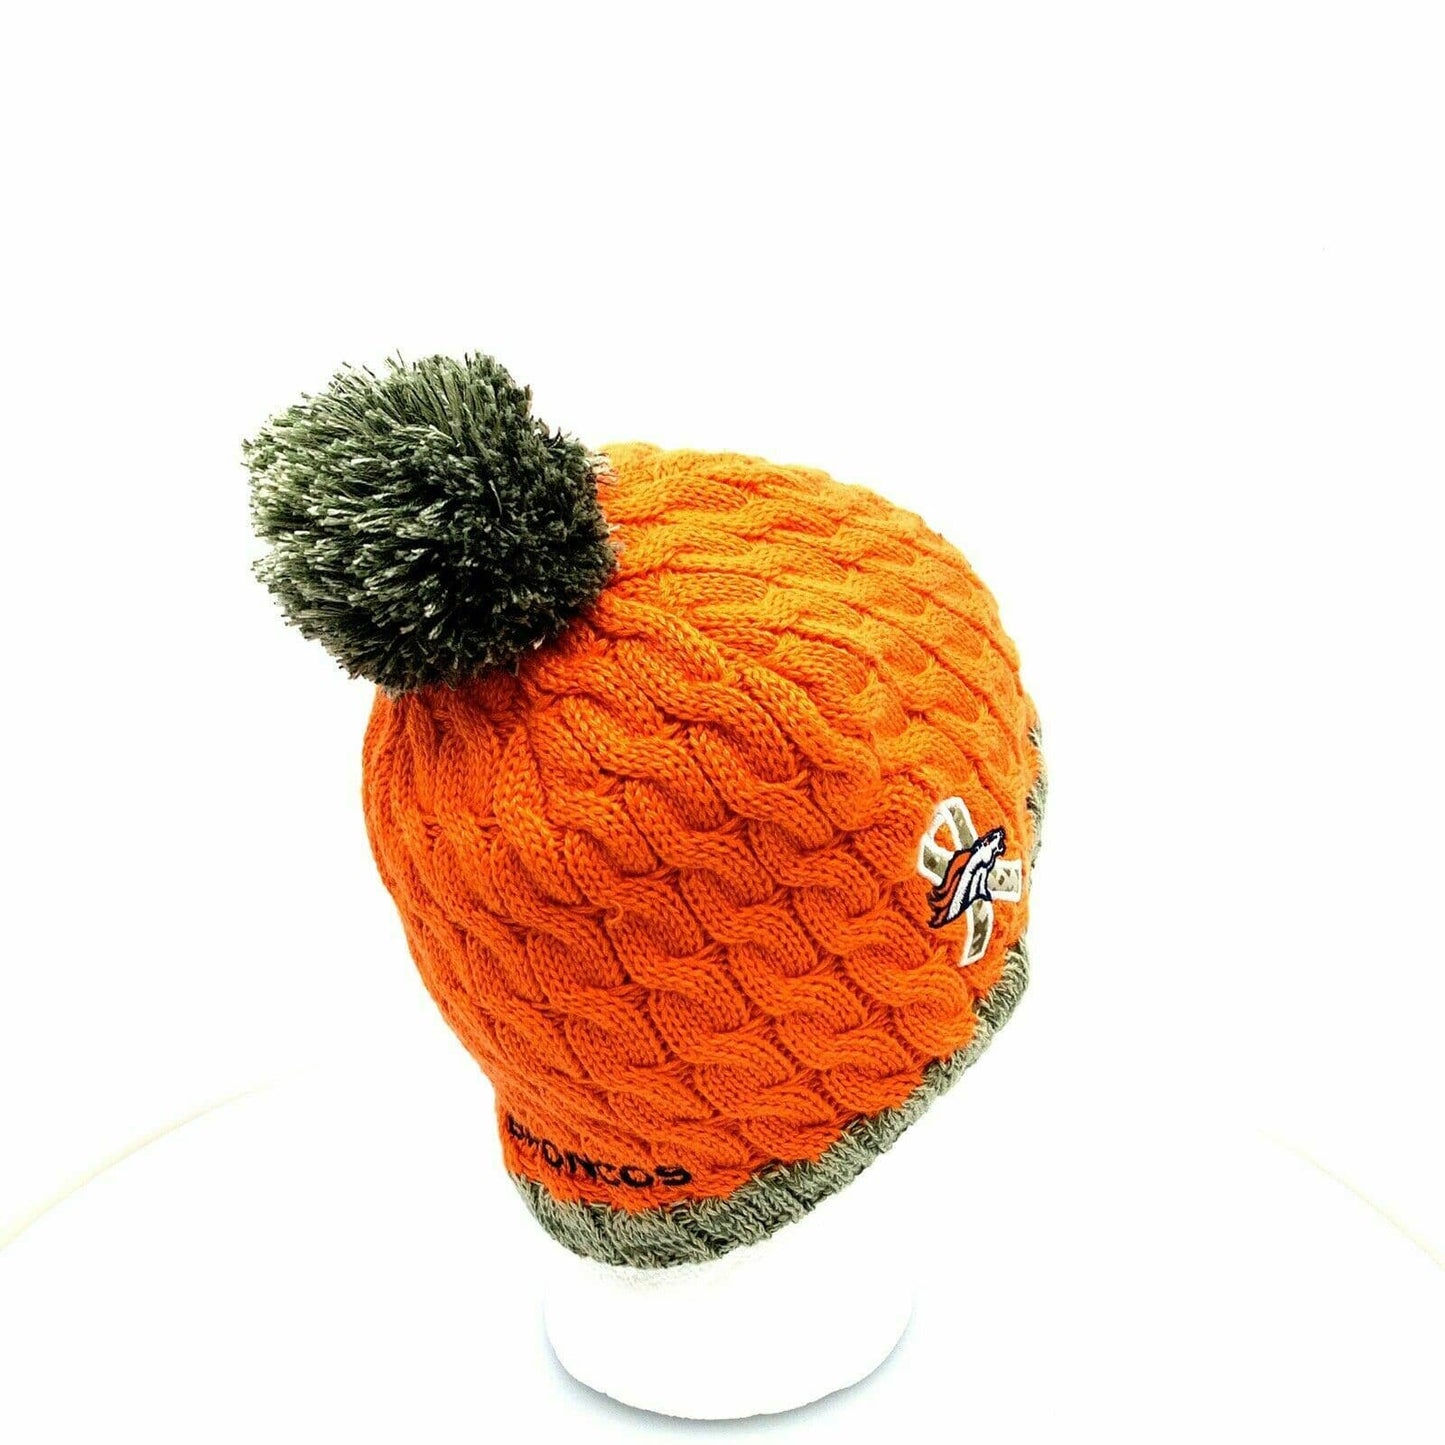 Cozy New Era Womens Cable Knit Fleece Lined Cap - Denver Broncos - OSFA - Orange - Very Good